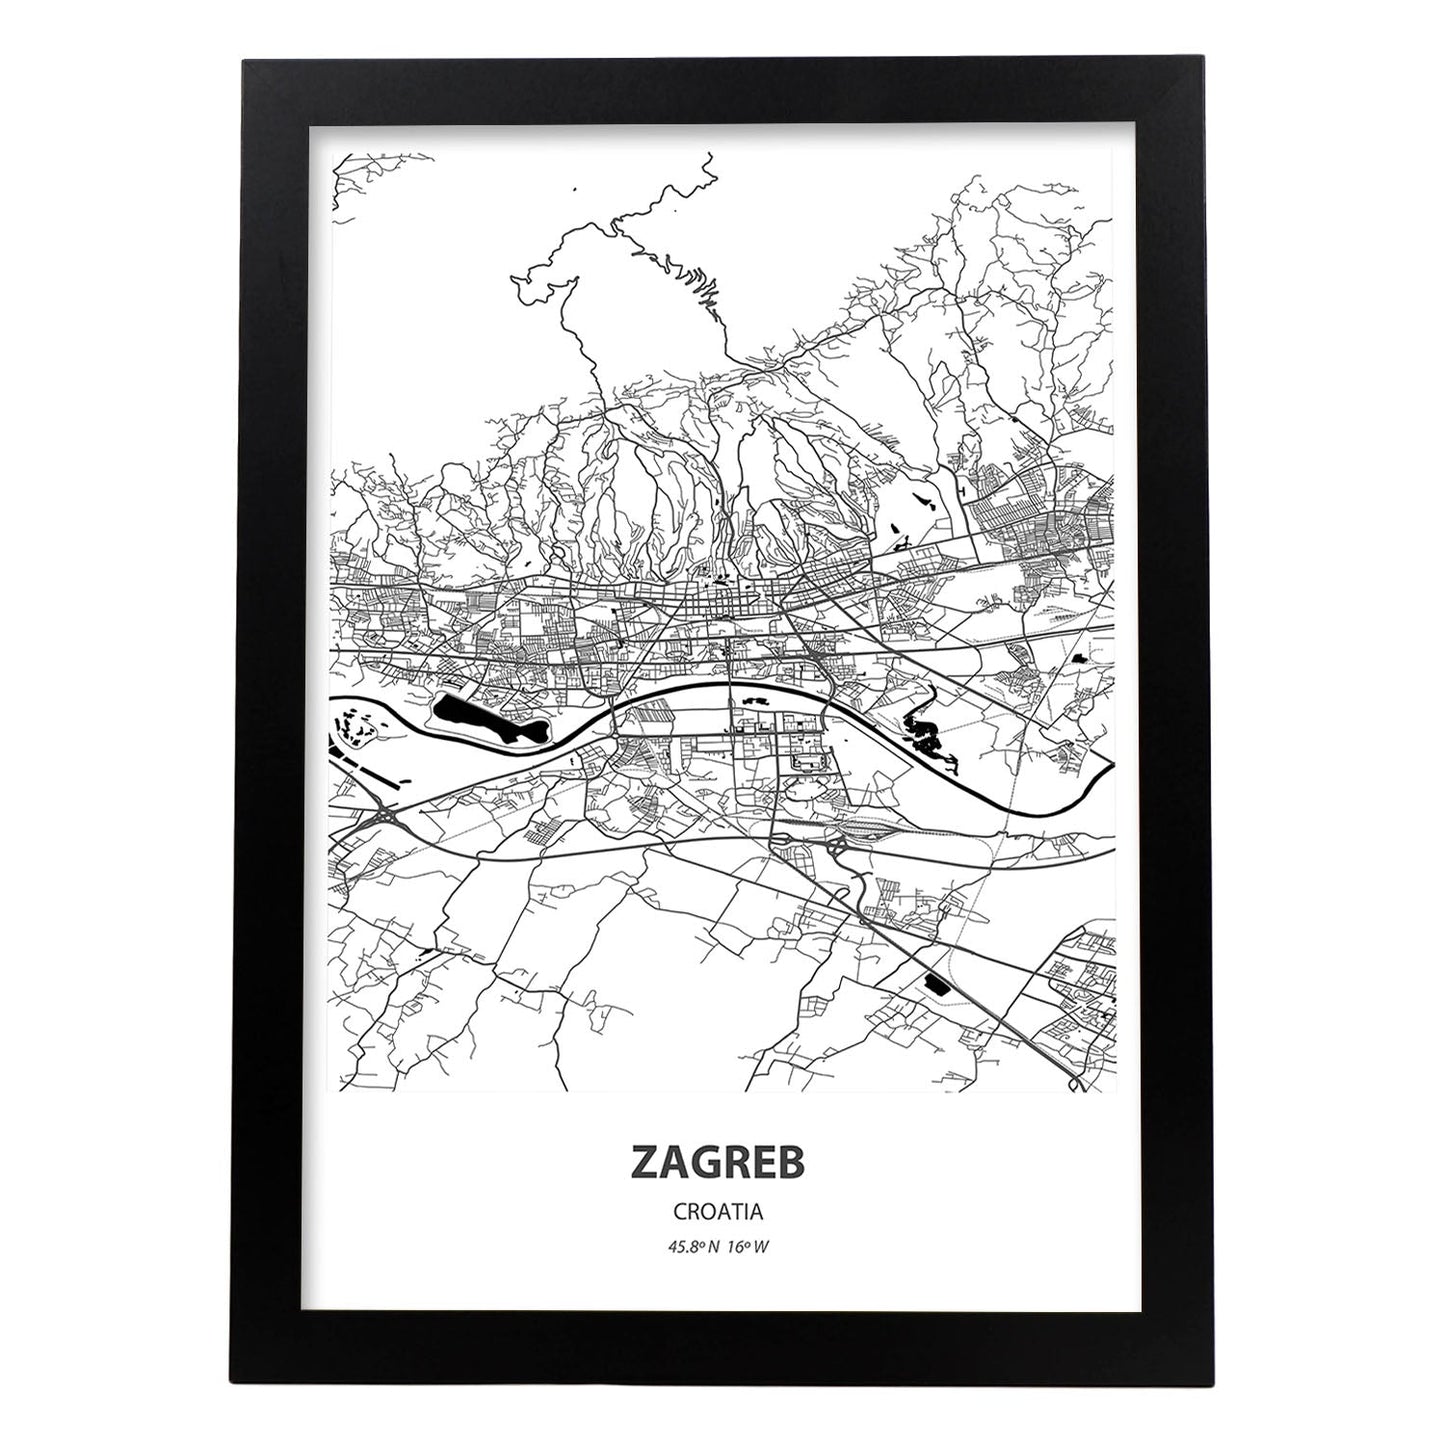 Poster con mapa de Zagreb - Croacia. Láminas de ciudades de Europa con mares y ríos en color negro.-Artwork-Nacnic-A4-Marco Negro-Nacnic Estudio SL